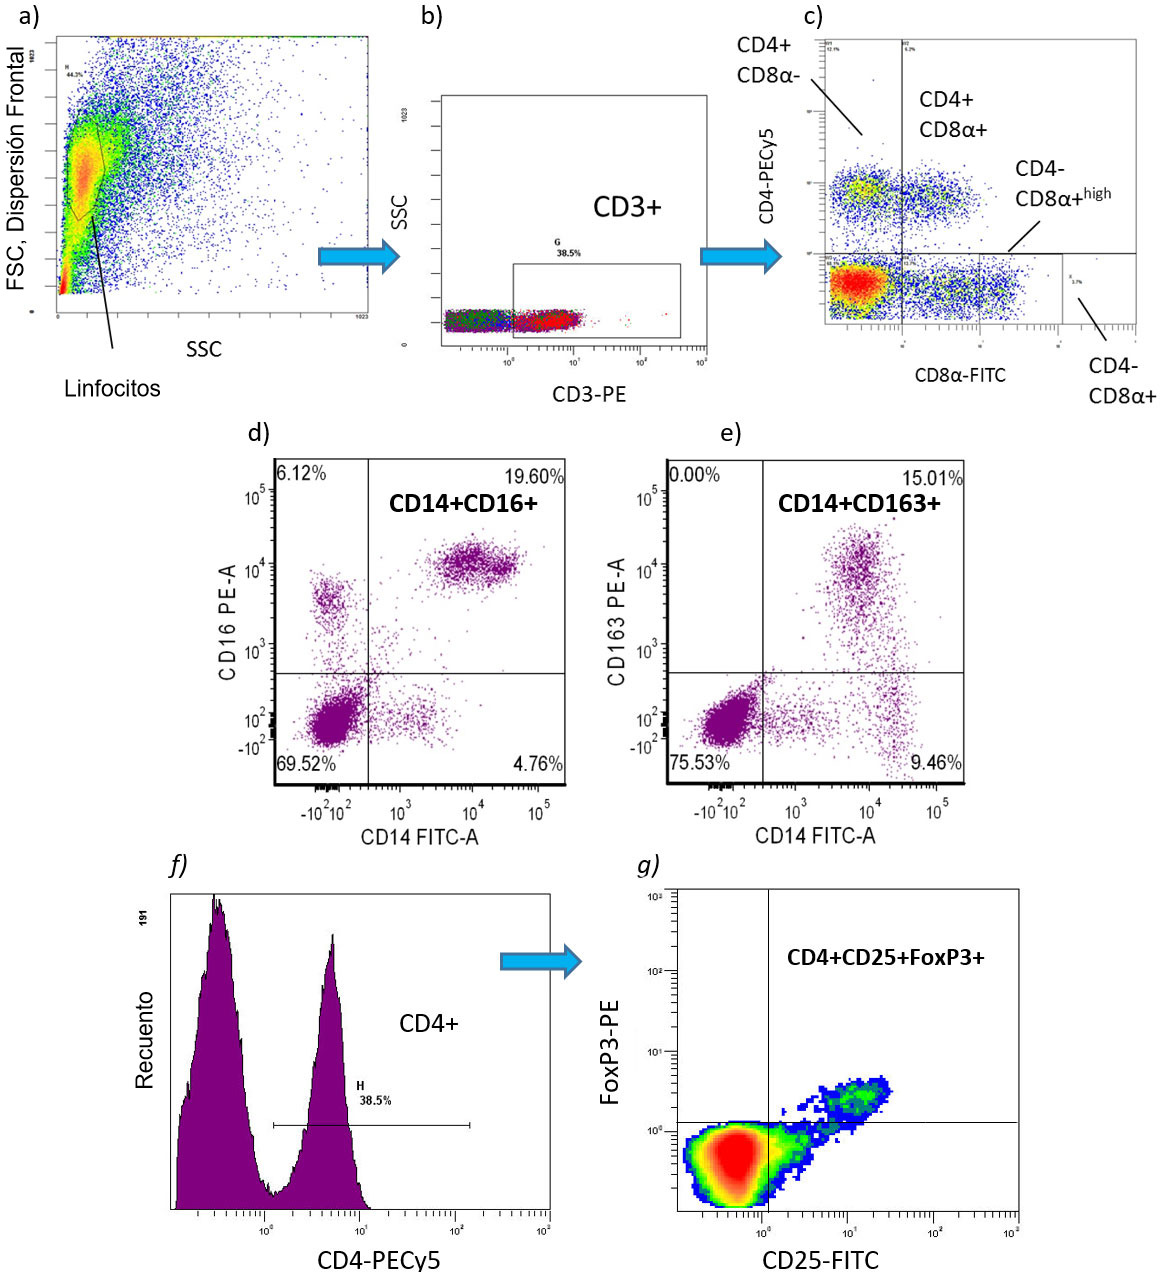 <p>Figura 2. Ejemplos de citometr&iacute;a de flujo para detectar fenotipos de c&eacute;lulas inmunes cuantificadas como porcentaje de valores absolutos [n&uacute;mero de c&eacute;lulas/ml de sangre]) en cerdo PBMC: a-c) Subpoblaciones de linfocitos T: CD3+CD4+CD8- = Linfocitos T helper (Th) CD3+CD4+CD8+ = c&eacute;lulas T de memoria CD3+CD4-CD8+ = linfocitos T citot&oacute;xicos (CTL) d-e) subpoblaciones de monocitos pro-inflamatorios: CD172+CD14+CD16+ CD172+CD16+CD163+ CD172+CD14+CD163+ f-g) CD4+CD25+FoxP3+ = linfocitosT reguladores (Tregs).</p>
